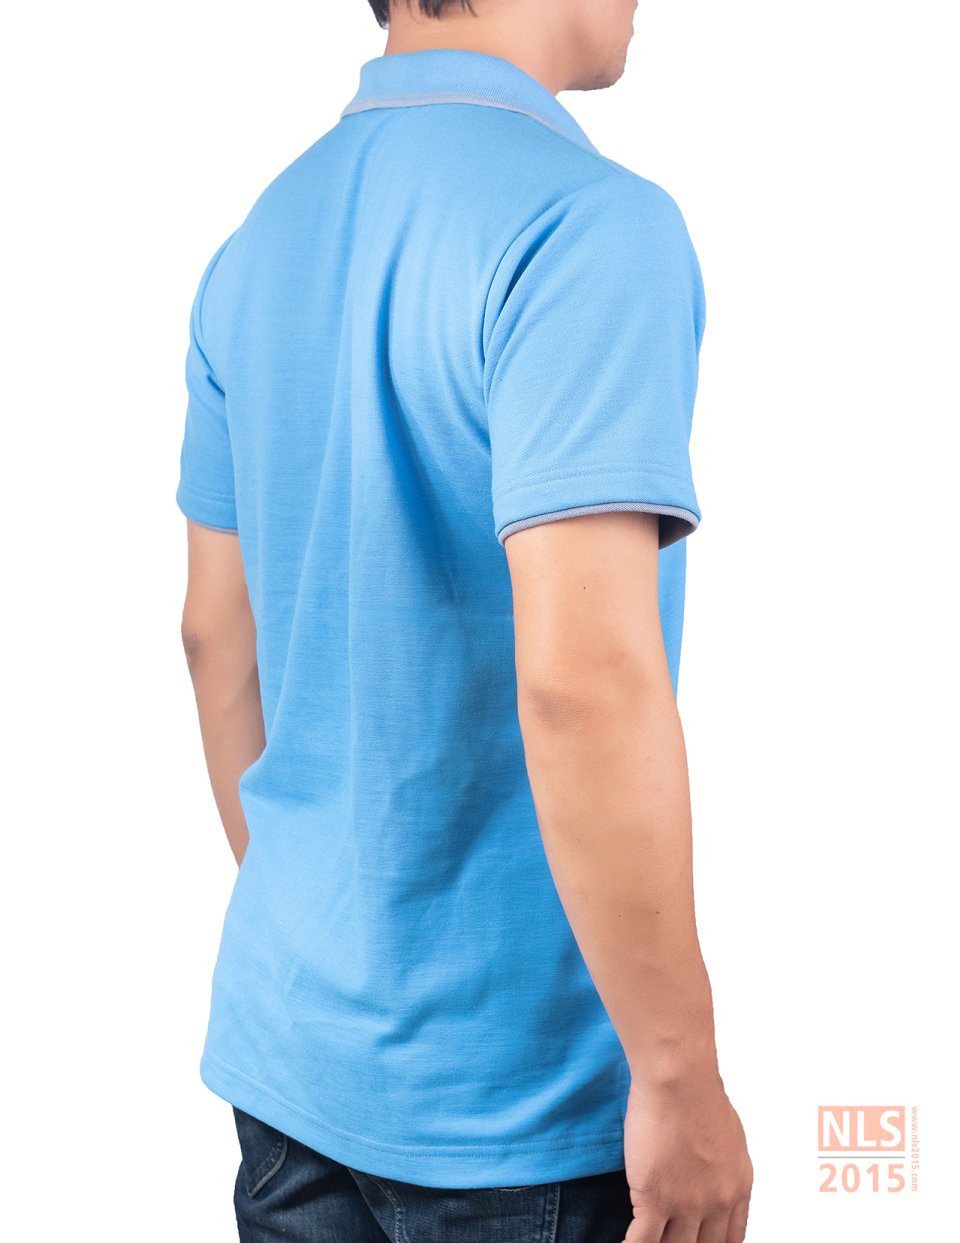 เสื้อโปโลเนื้อผ้า CVC สีฟ้า ขลิบสีเทา มีกระเป๋าอกซ้าย ปักอก 1 จุดรูปที่ 